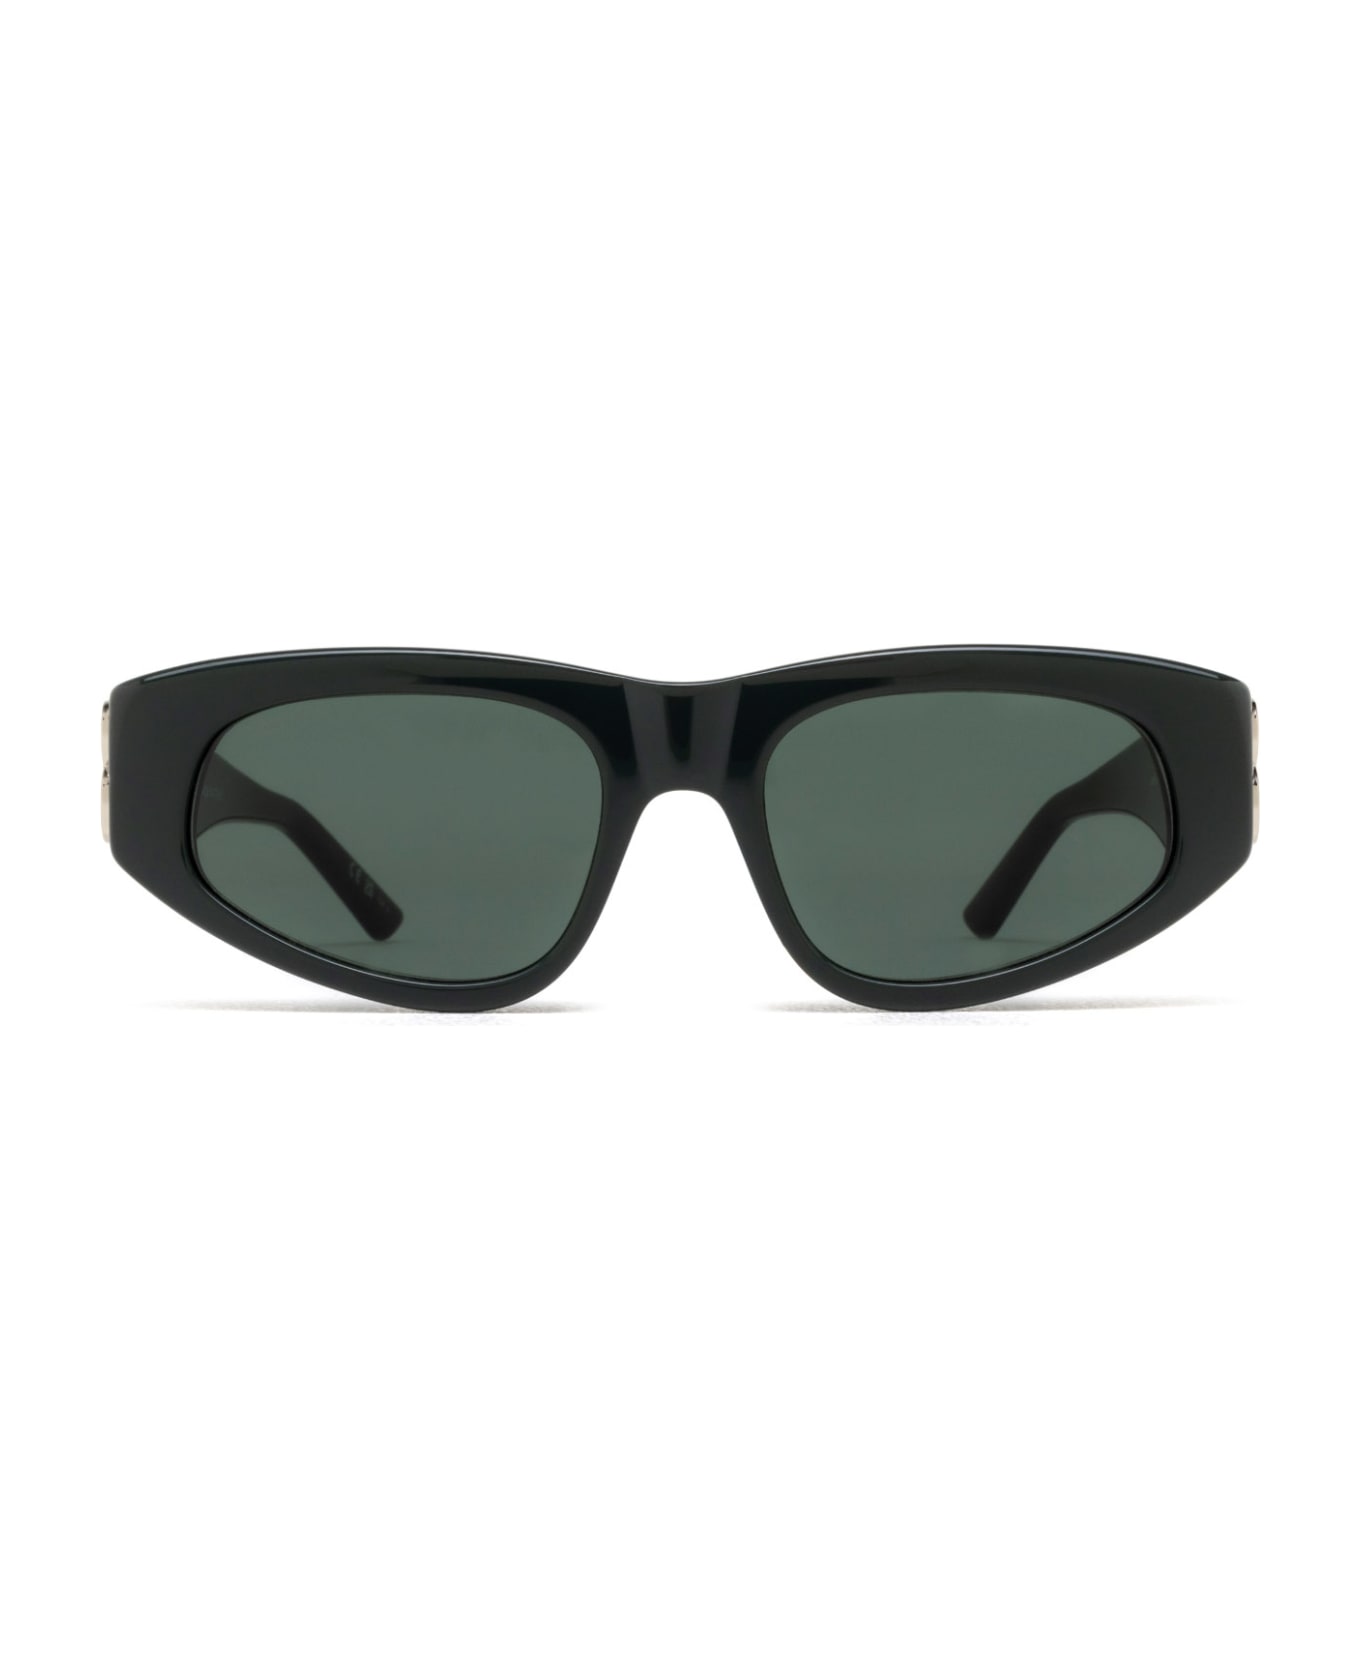 Balenciaga Eyewear Bb0095s Sunglasses - Green